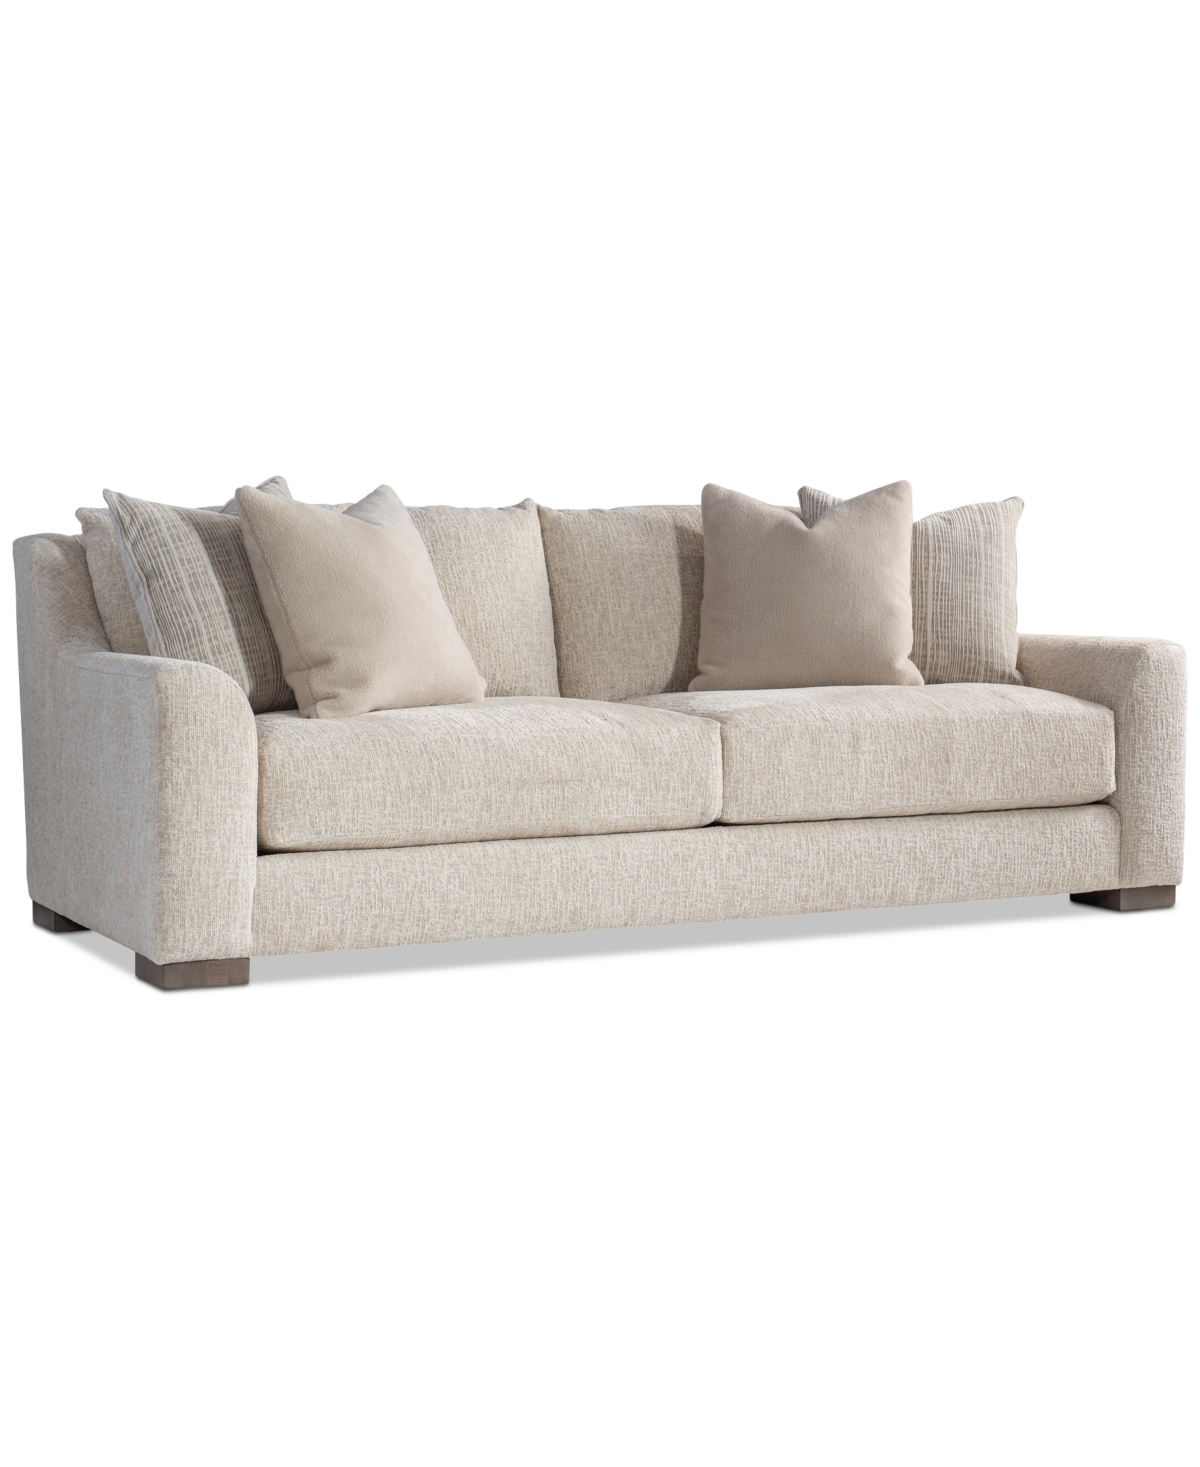 Furniture Gabi 94" Fabric Sofa, Created For Macy's In Tan